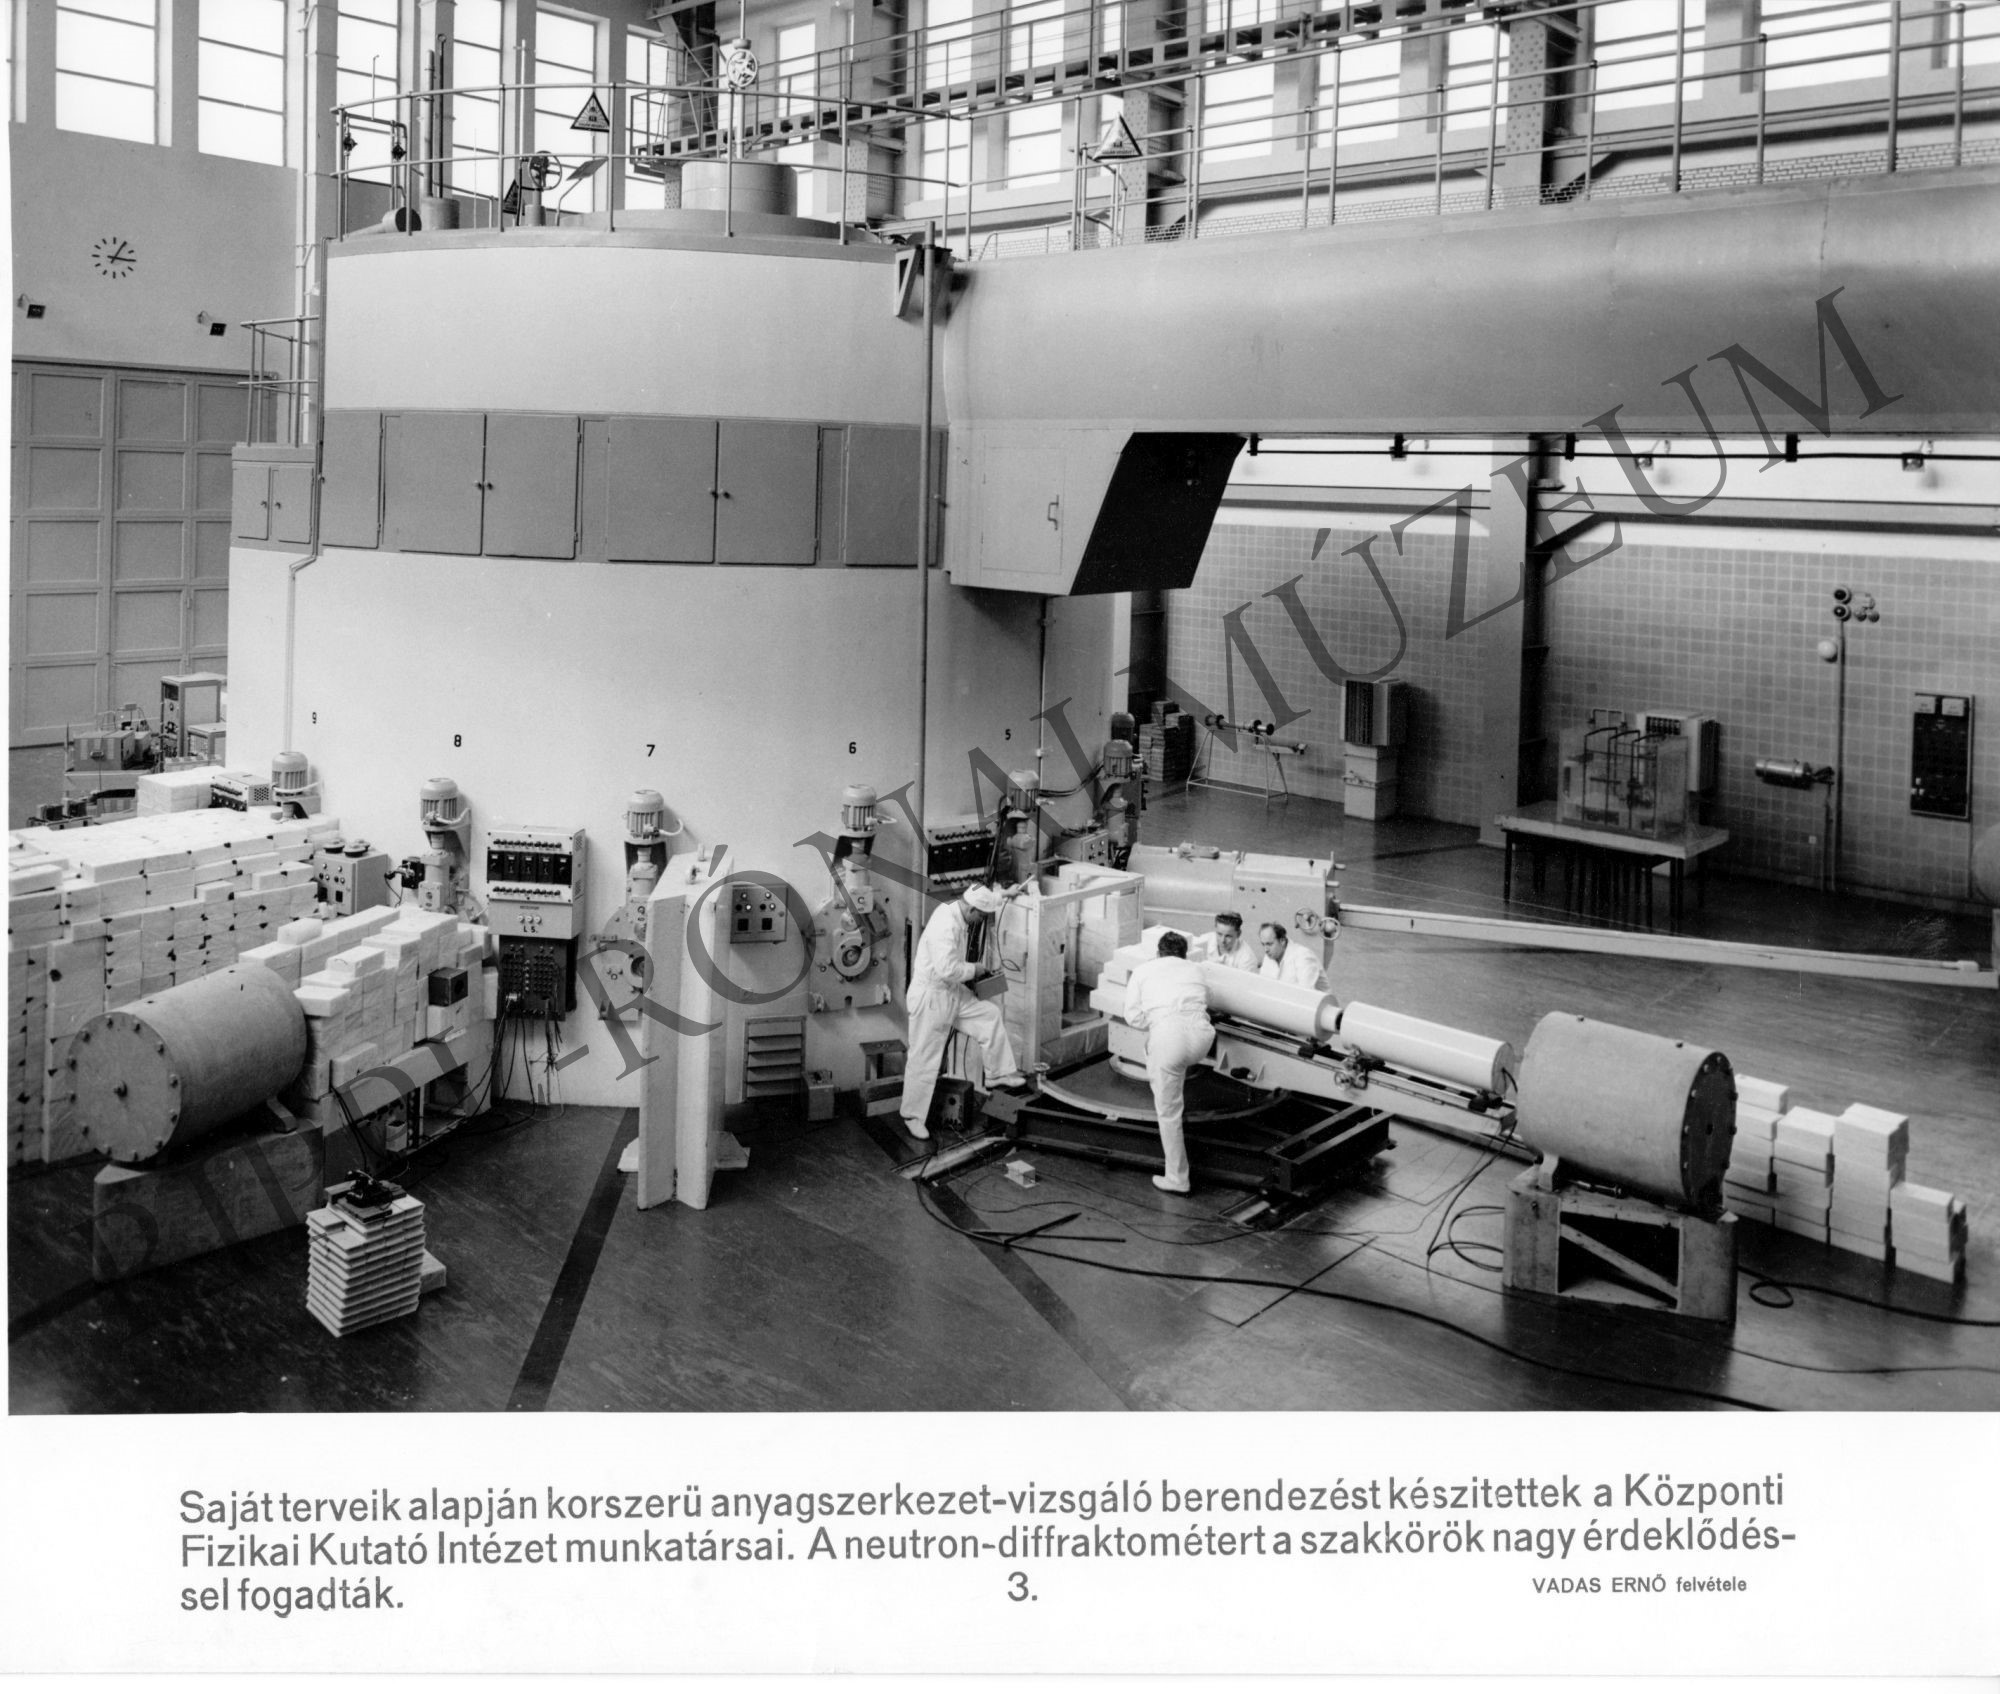 Anyagszerkezet-vizsgáló berendezést készítettek a Központi Fizikai Kutató Intézet munkatársai (Rippl-Rónai Múzeum CC BY-NC-SA)